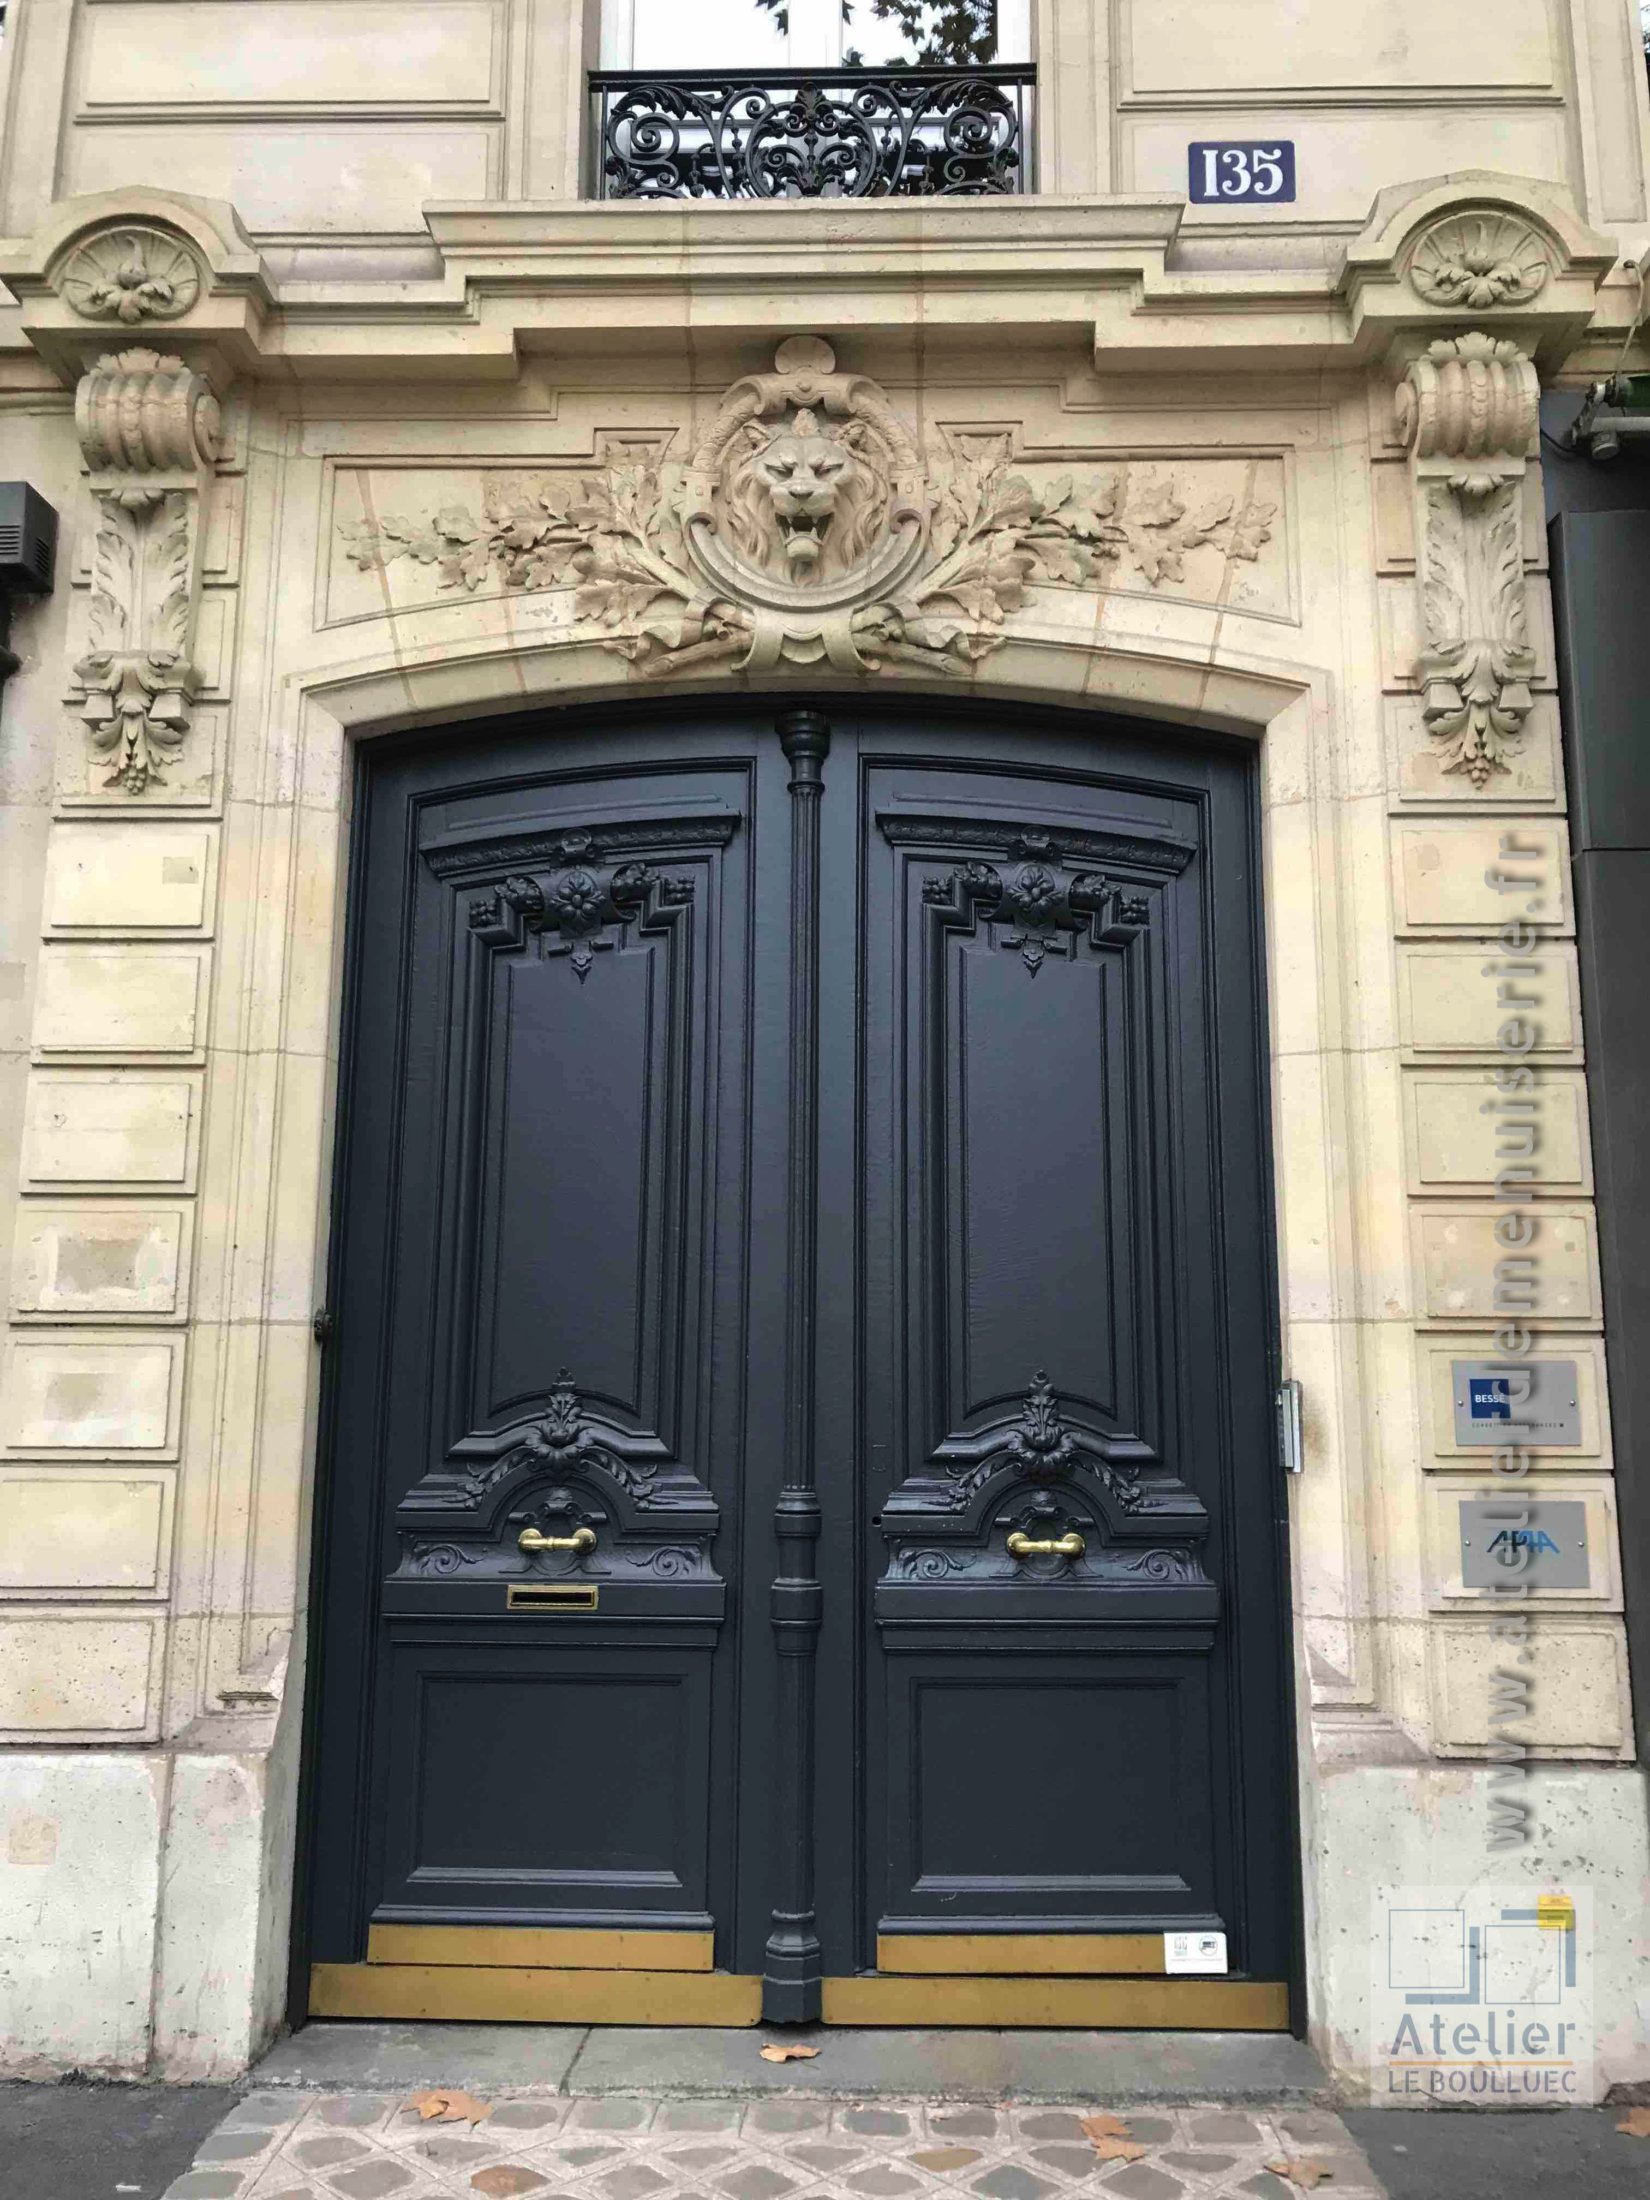 Porte Cochère Style Louis XVI - 135 BD HAUSSMANN PARIS 8